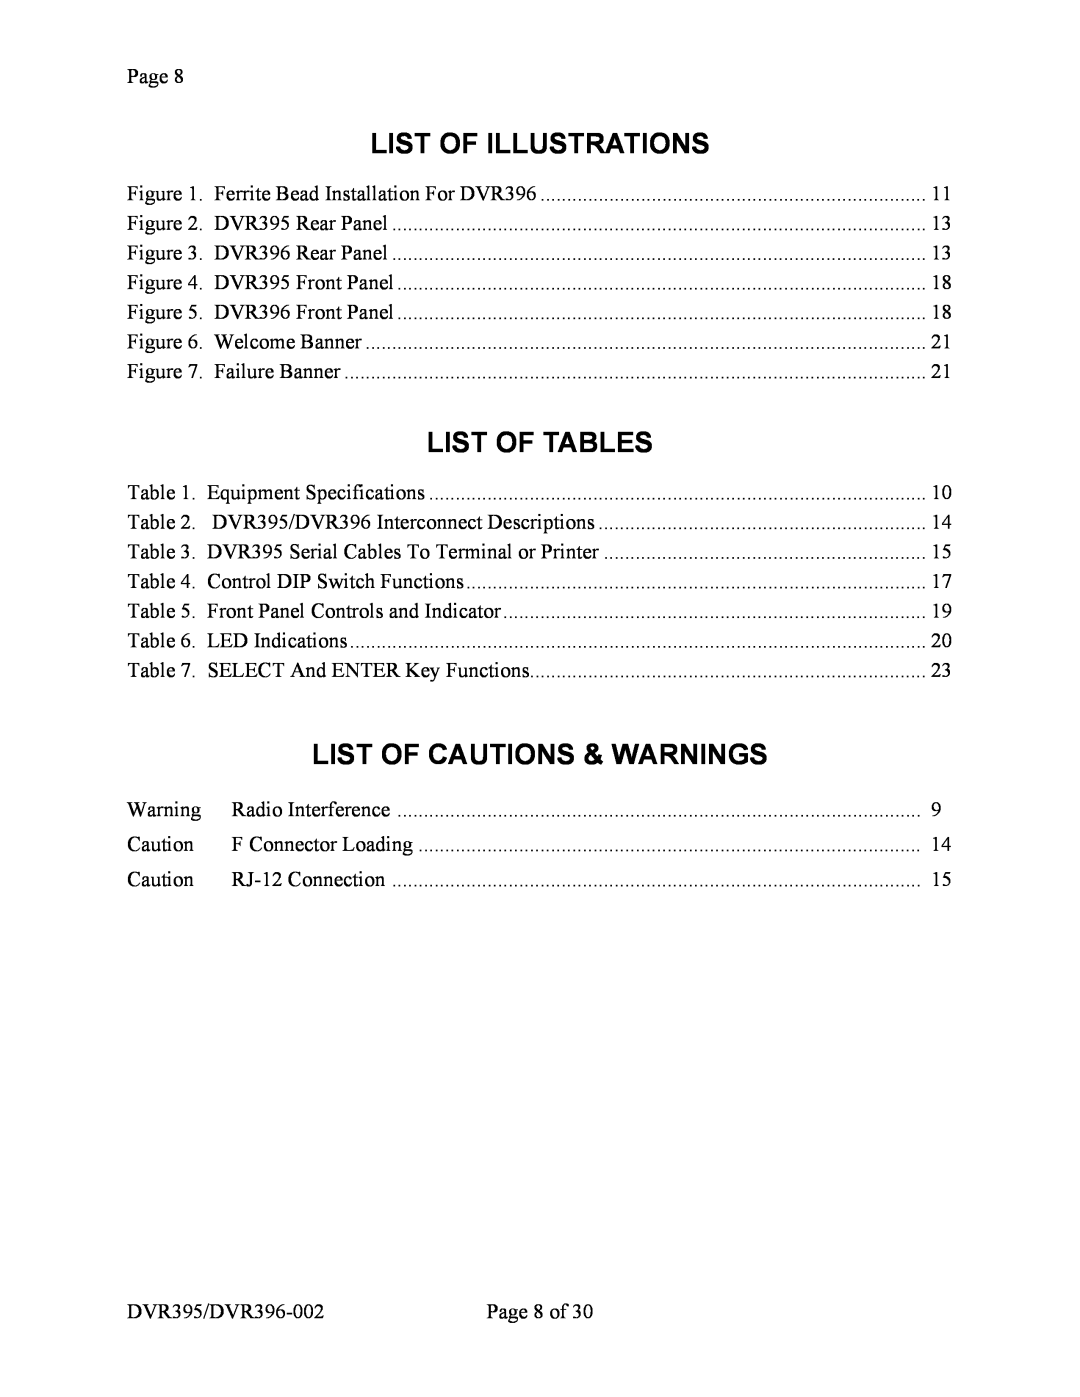 Wegener Communications DVR396, DVR395 manual List Of Illustrations, List Of Tables, List Of Cautions & Warnings 